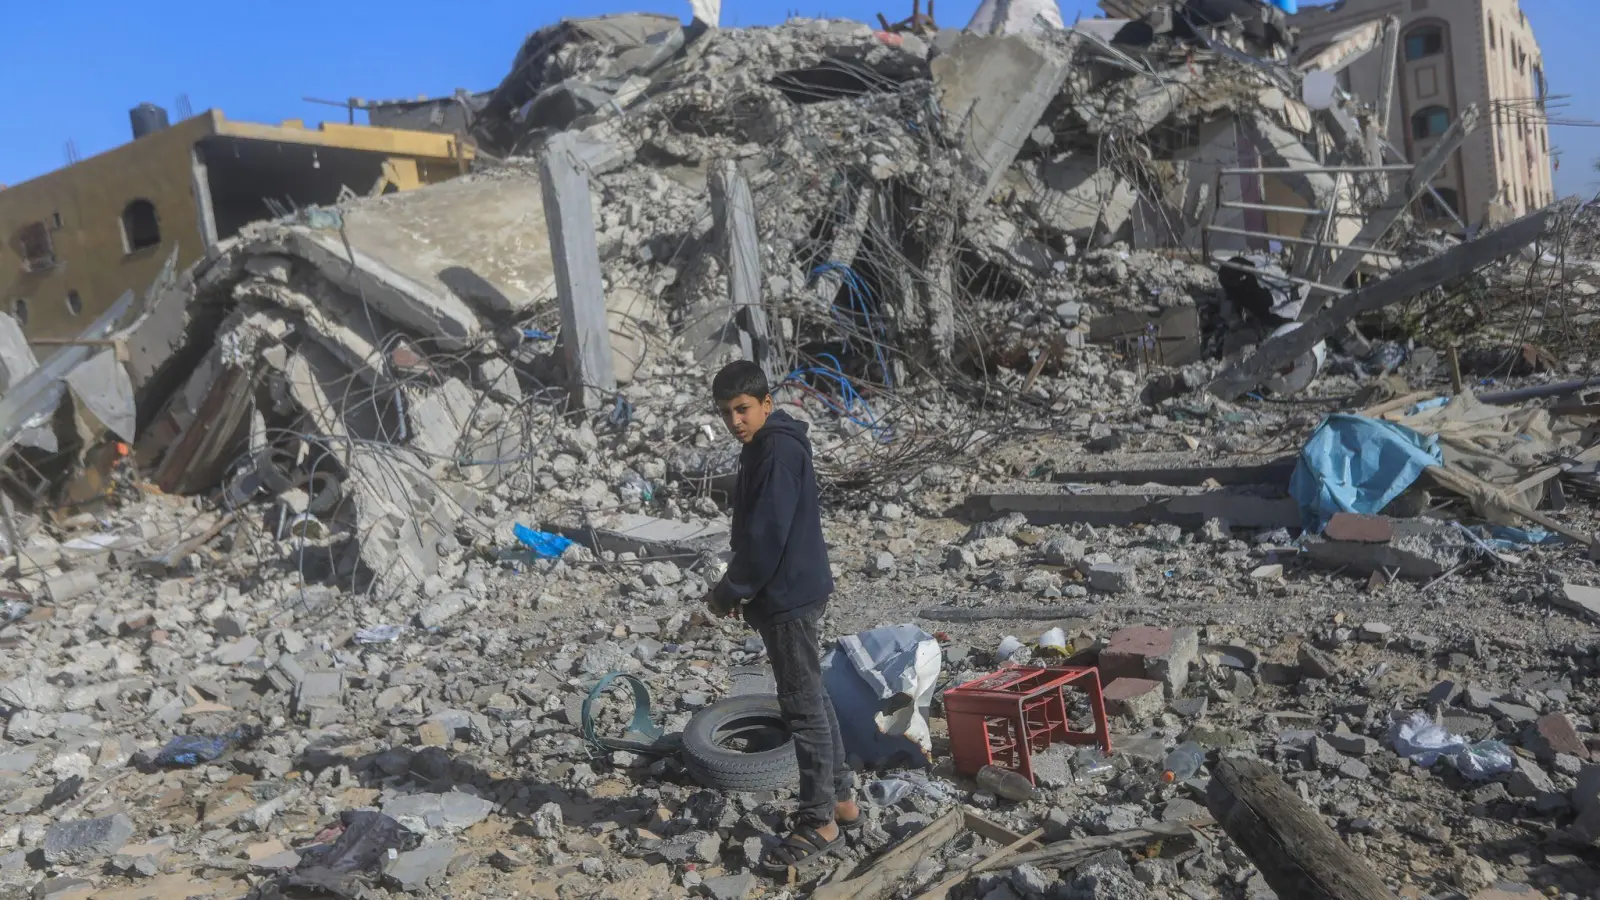 Ein junger Palästinenser auf den Trümmern von zerstörten Häusern nach israelischen Angriffen in Chan Juni im Gazastreifen. (Foto: Mohammed Talatene/dpa)